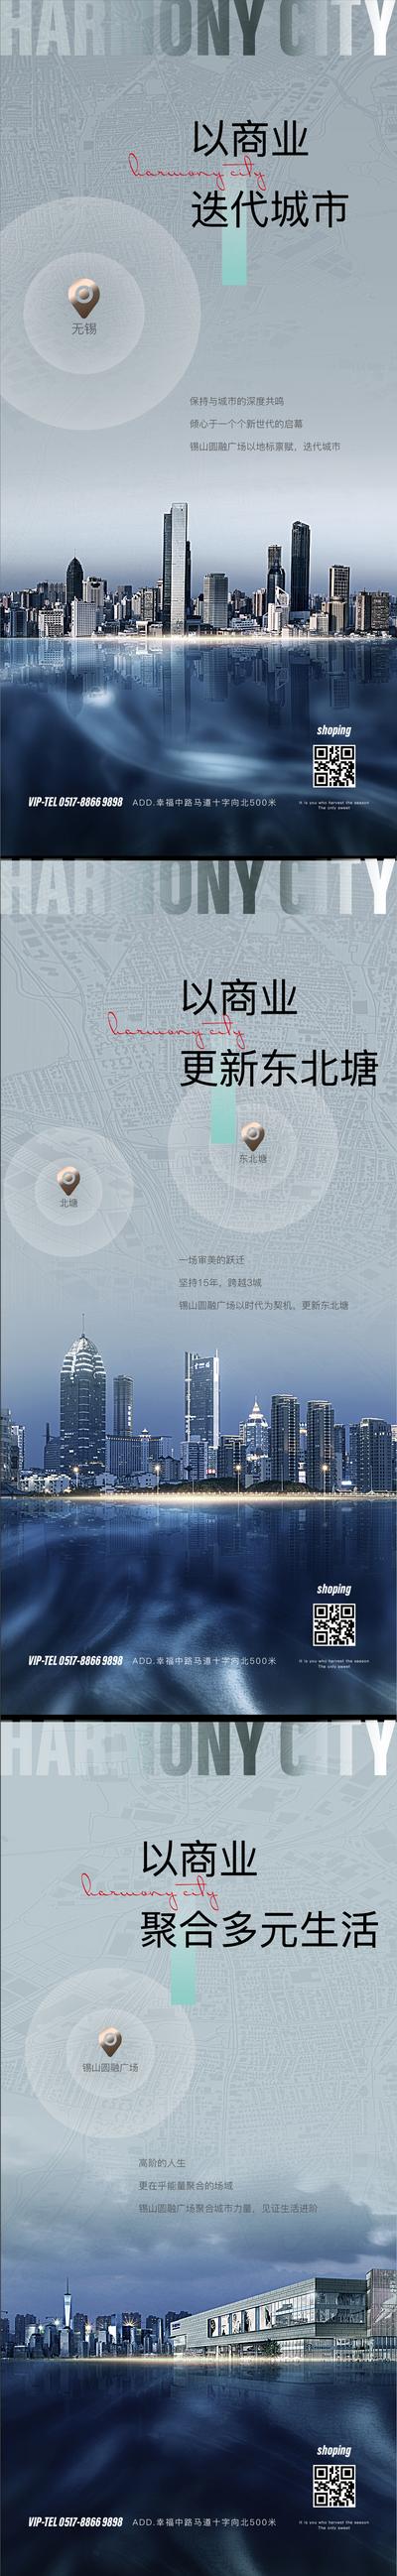 南门网 海报 房地产 商业 迭代 城市 配套 多元 系列